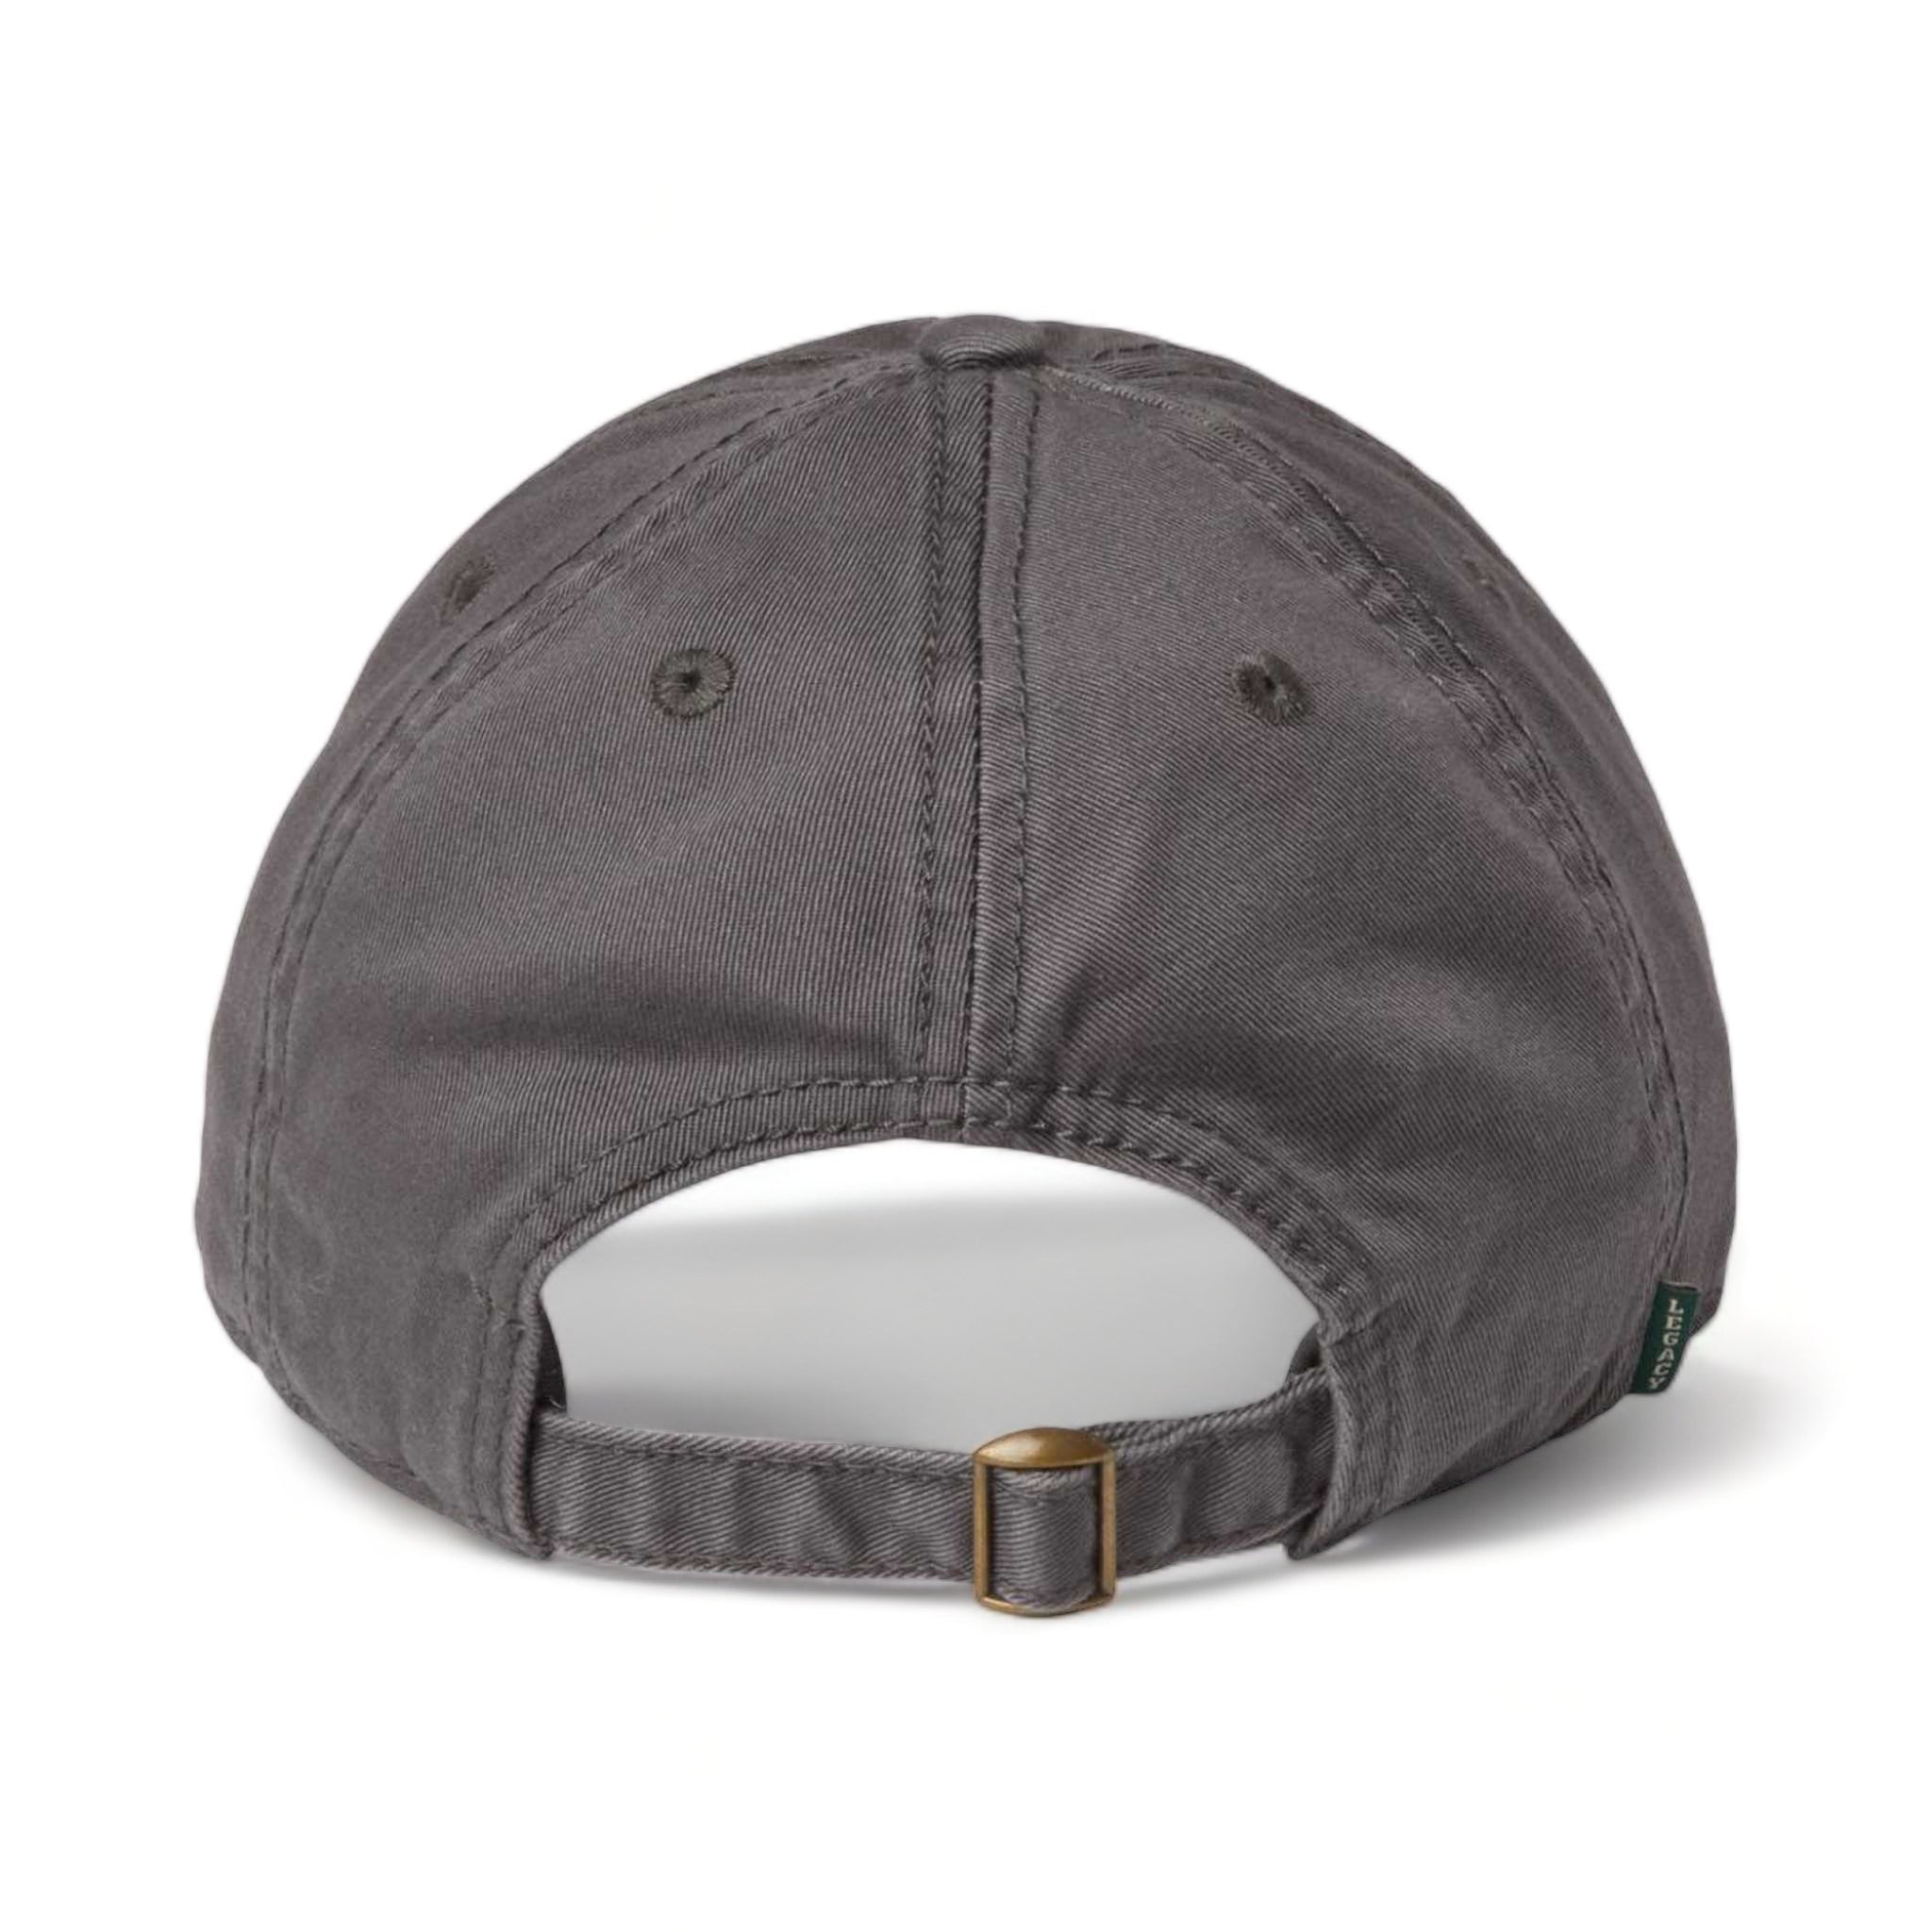 Back view of LEGACY EZA custom hat in dark grey